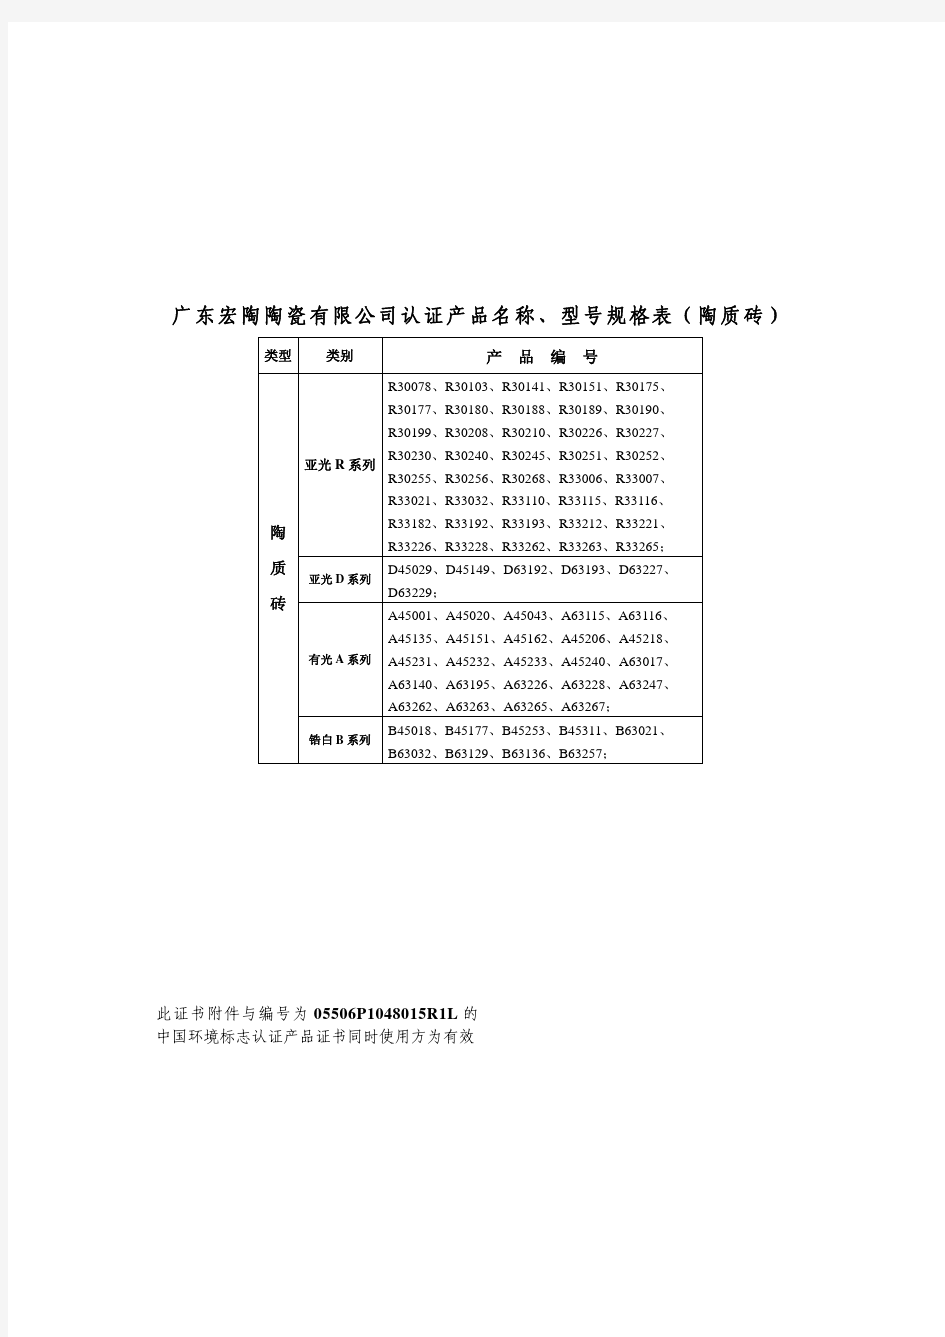 广东宏陶陶瓷有限公司认证产品名称、型号规格表(瓷质砖)